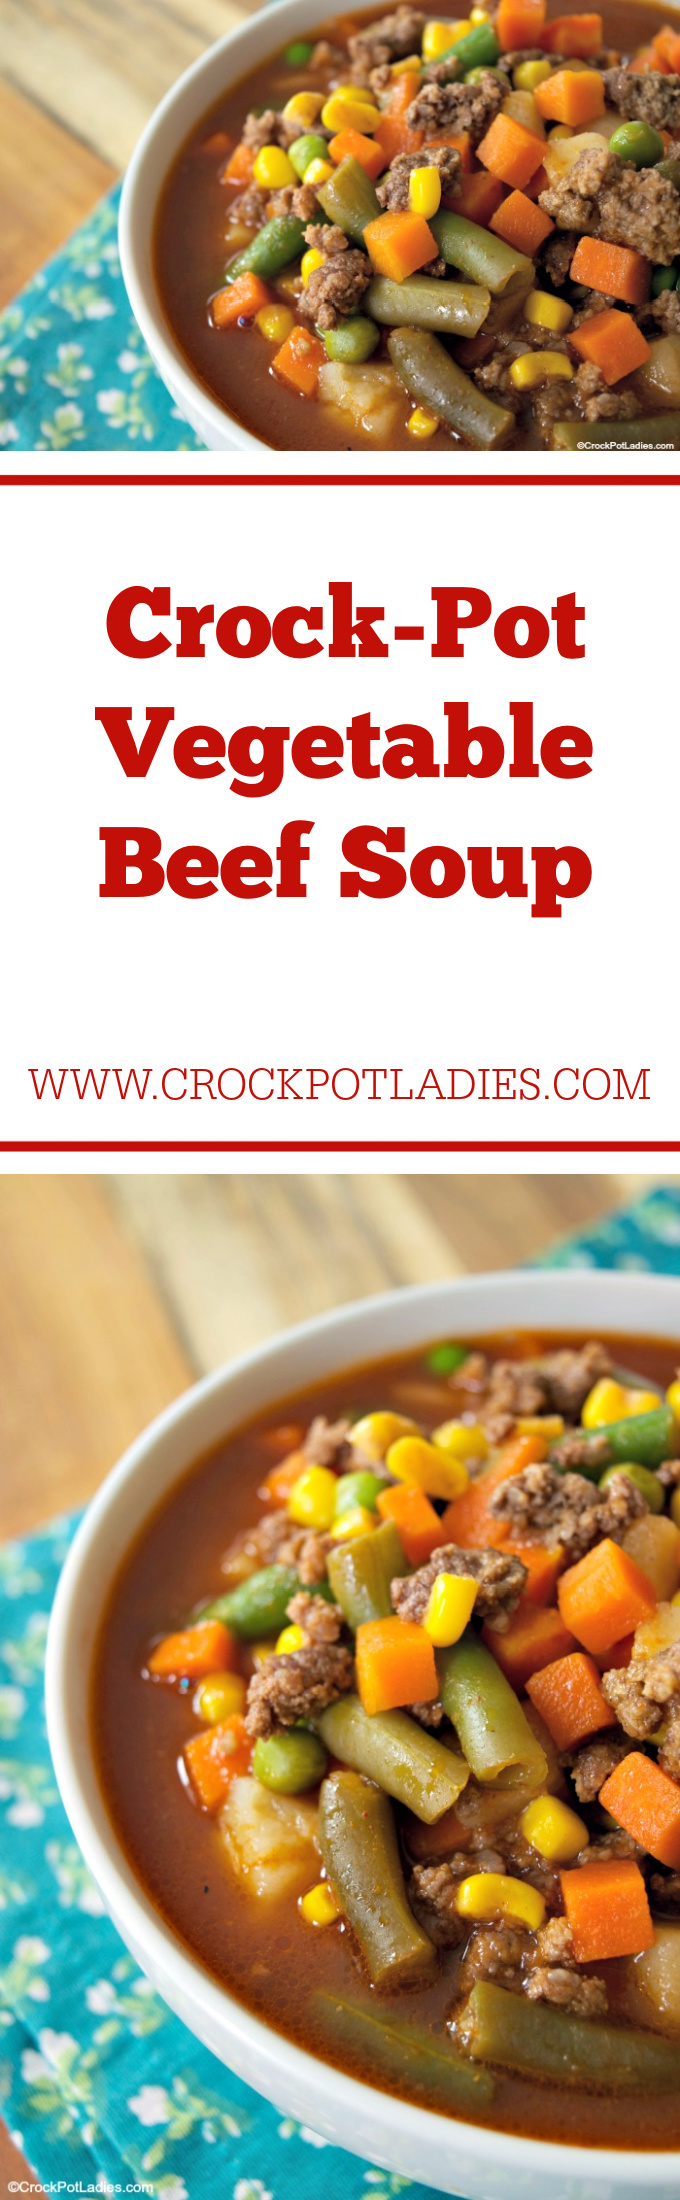 Crock-Pot Vegetable Beef Soup